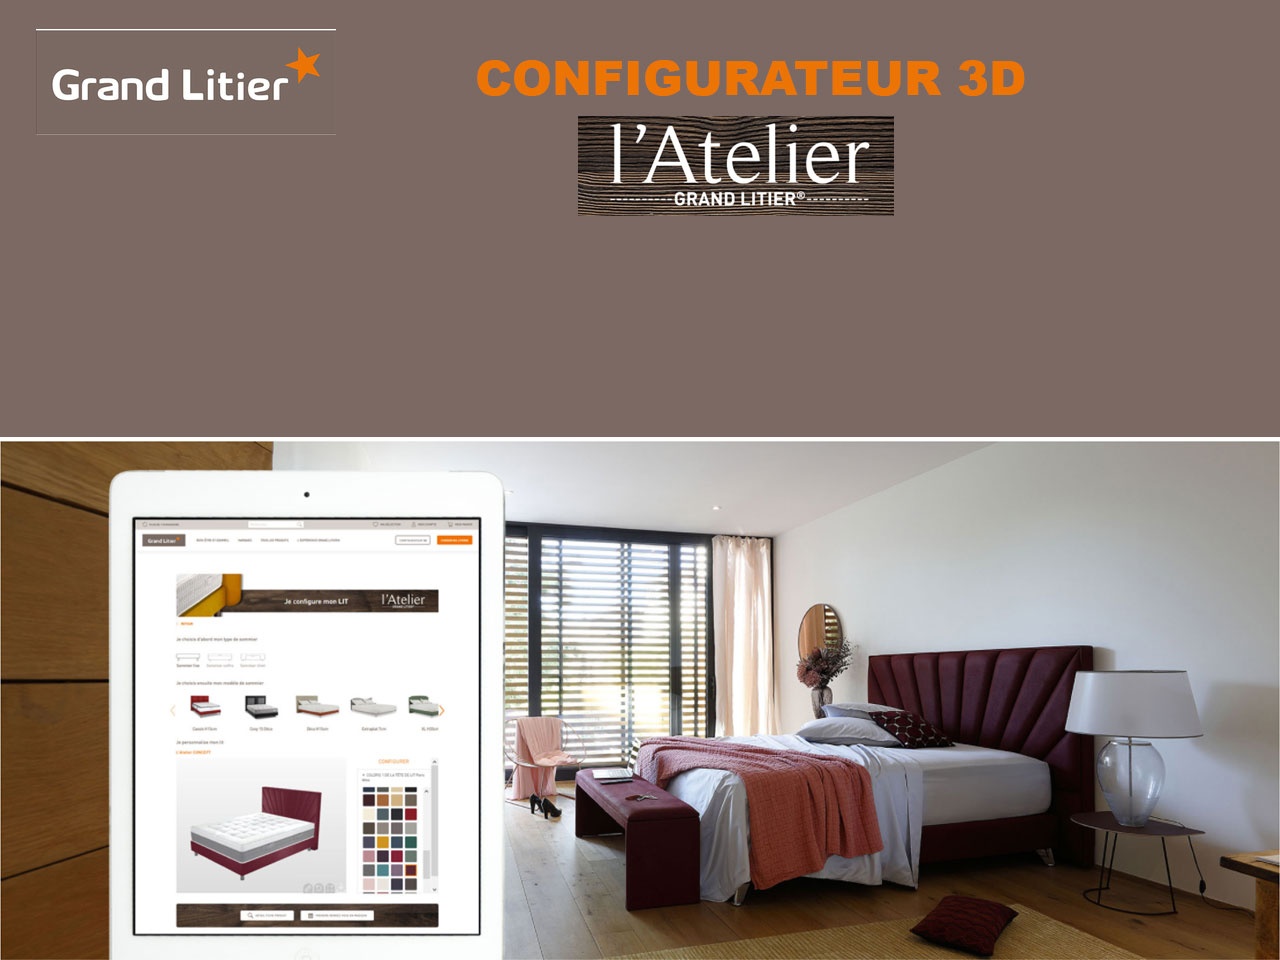 Grand Litier met en ligne son configurateur 3D: L’Atelier